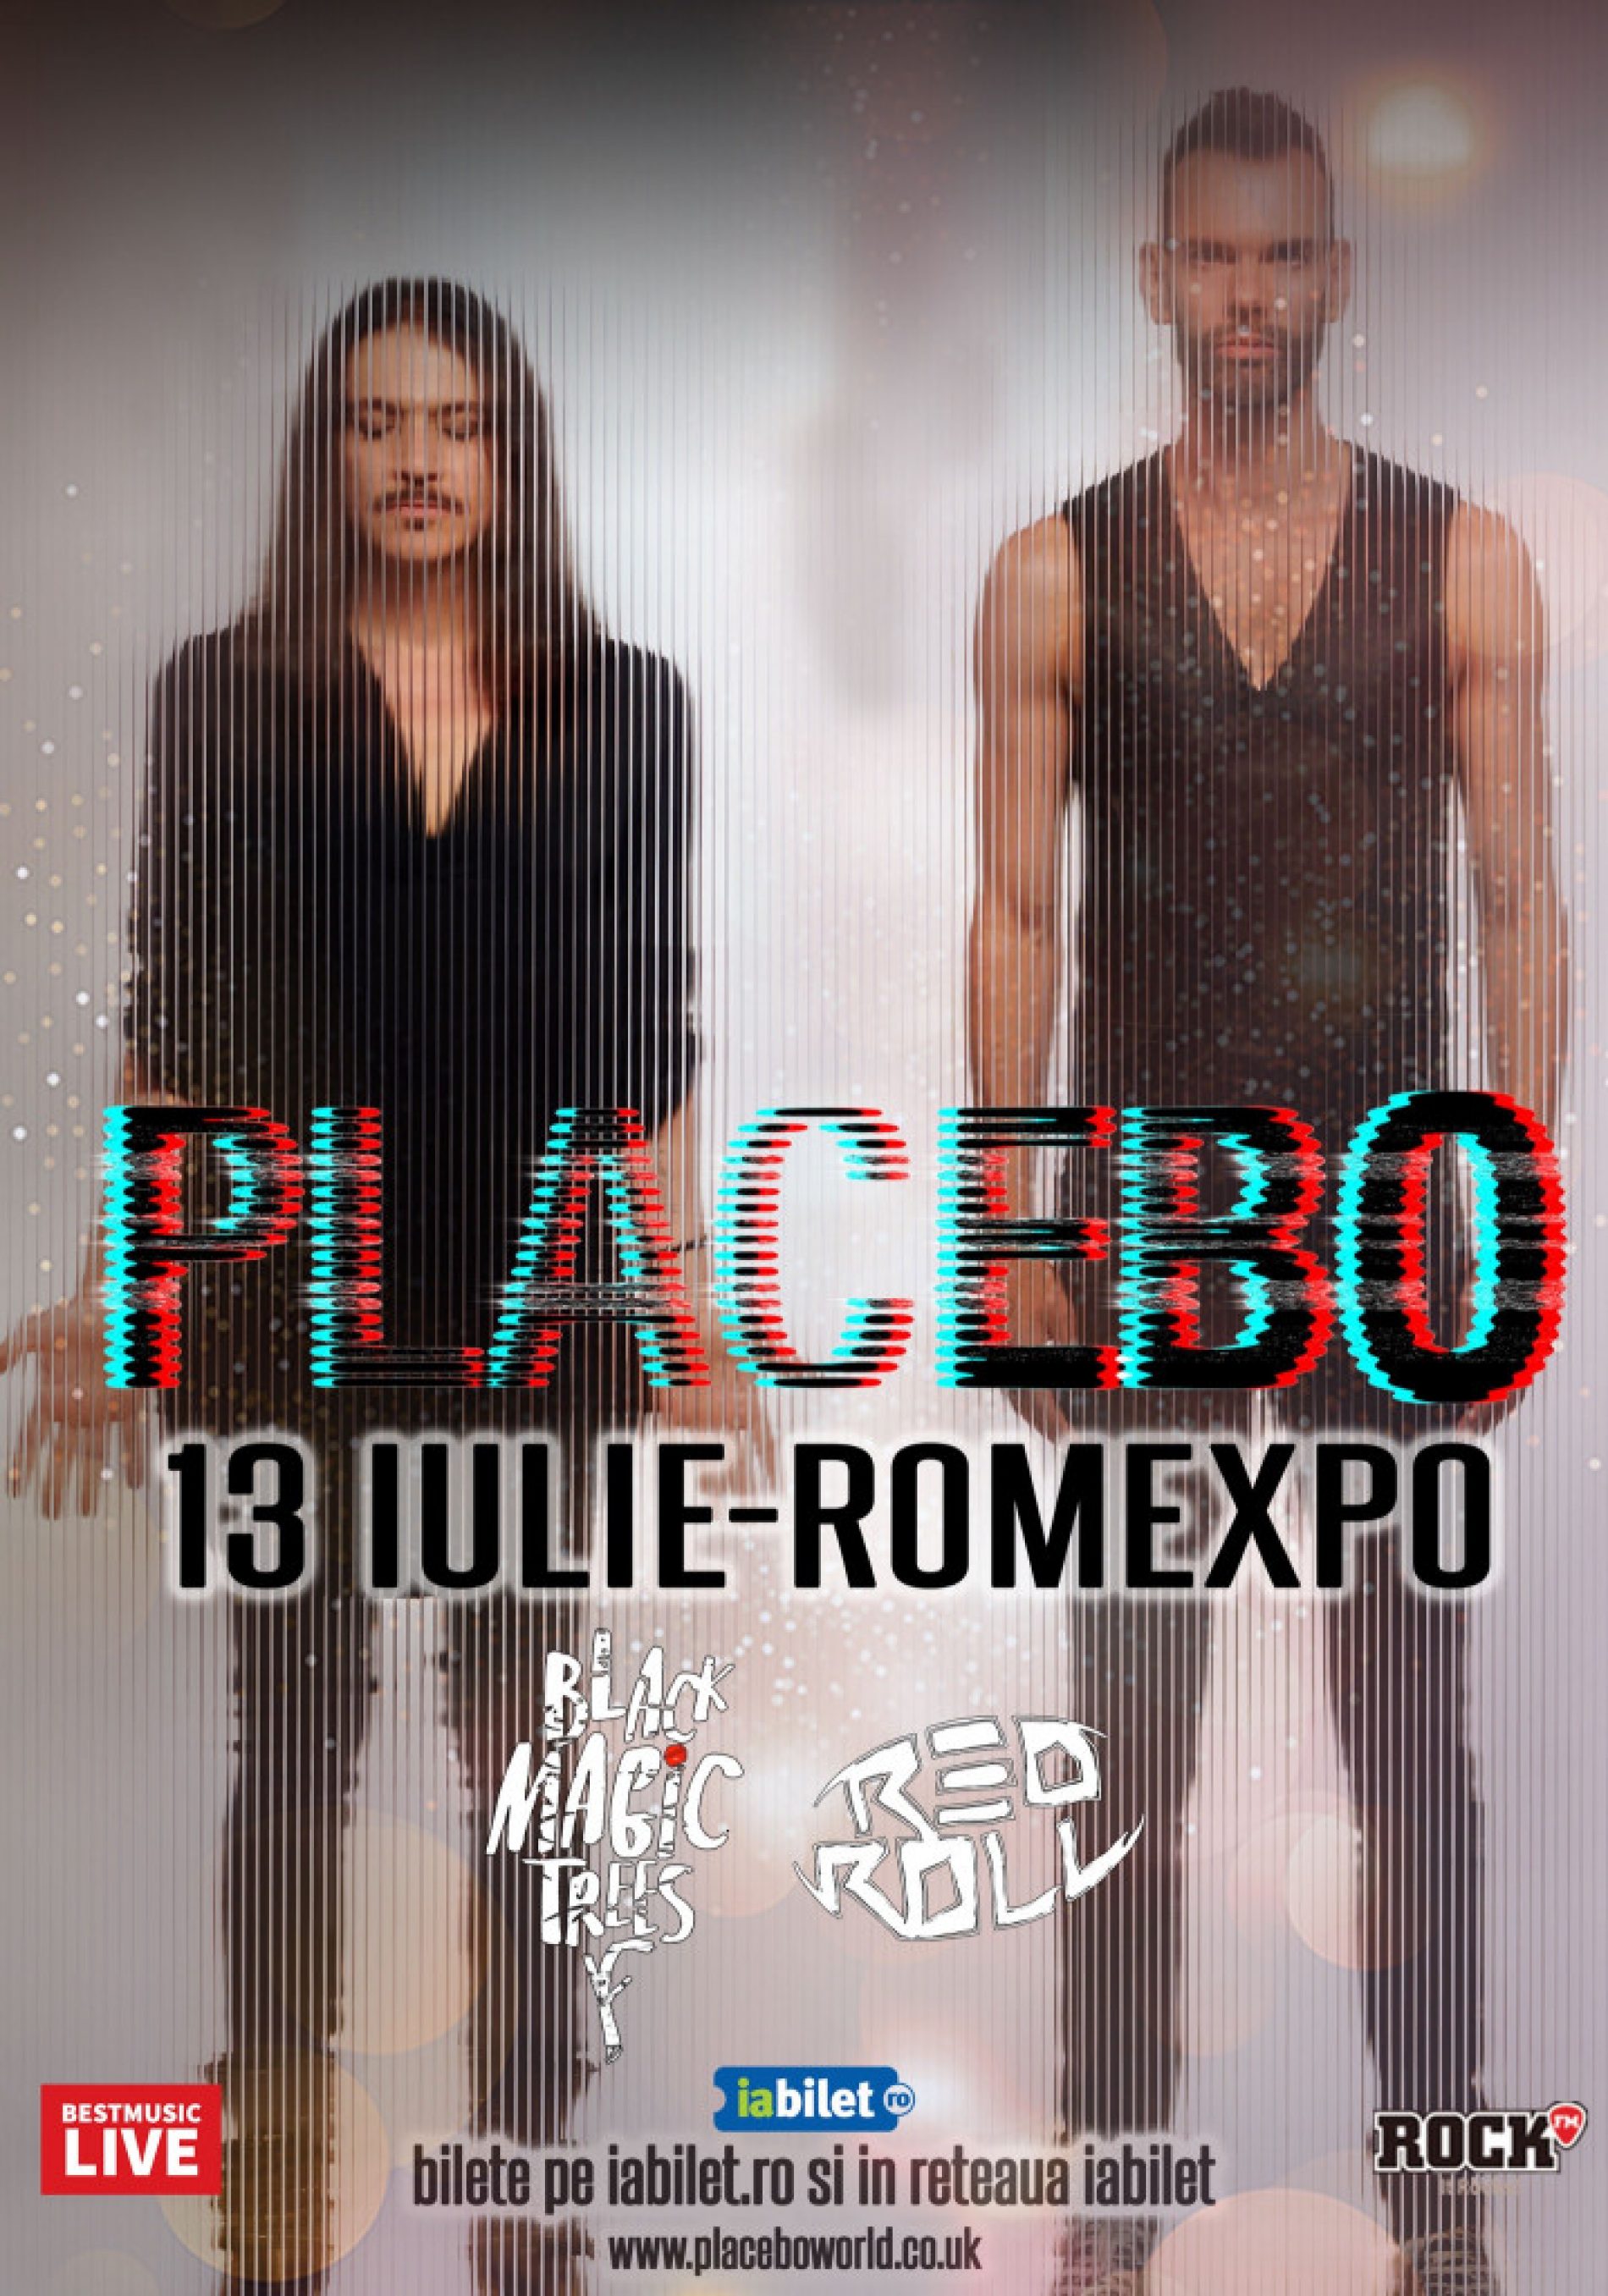 Black Magic Trees și Red Roll vor cânta în deschiderea concertului Placebo de la Romexpo